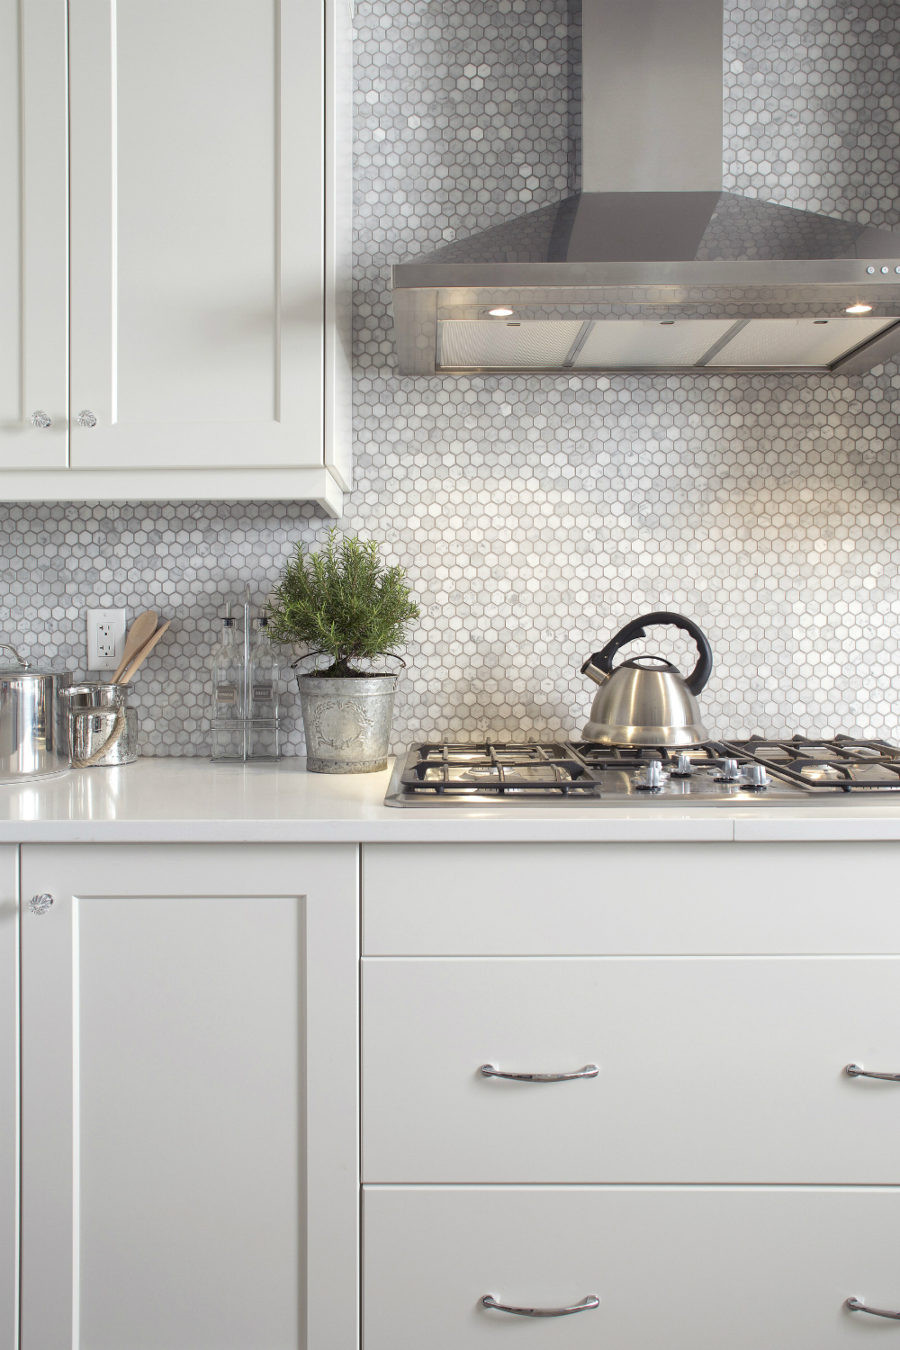 Hexagon Kitchen Backsplash Luxury Modern Kitchen Backsplash Ideas for Cooking with Style